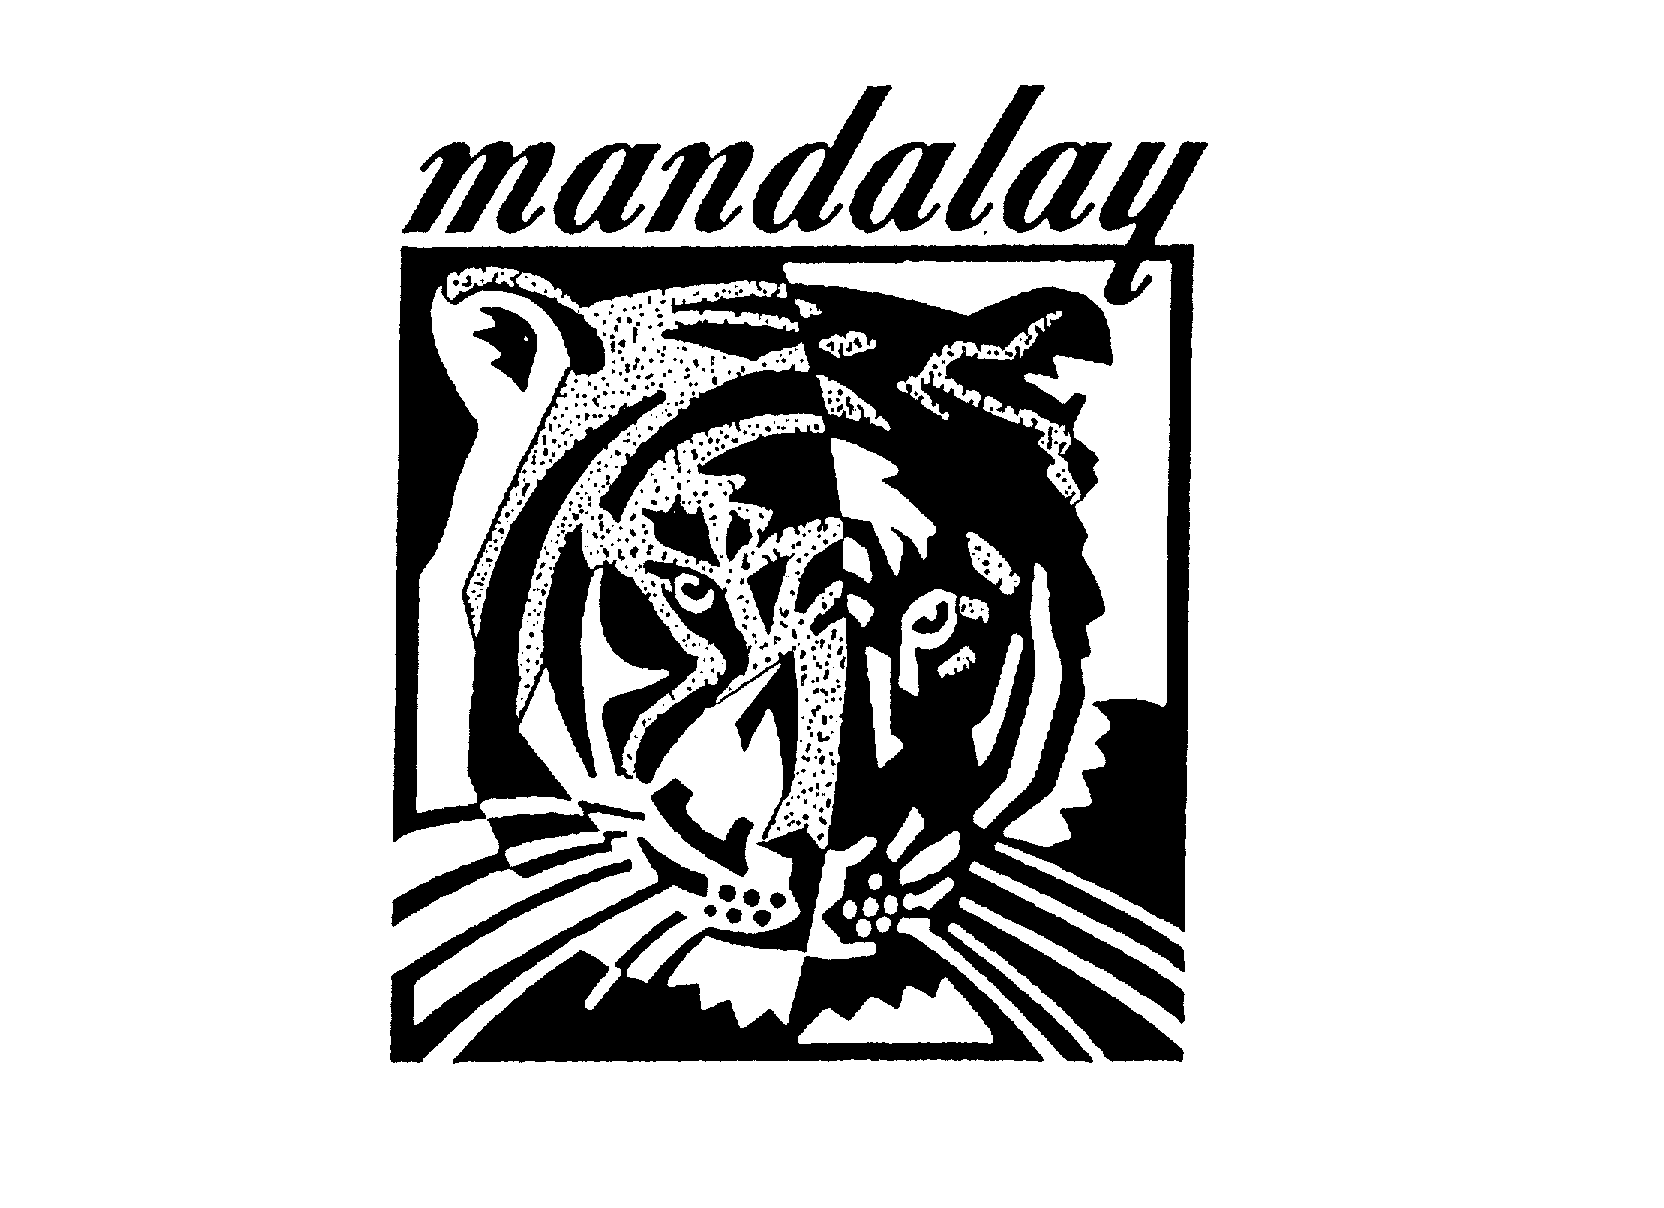 MANDALAY